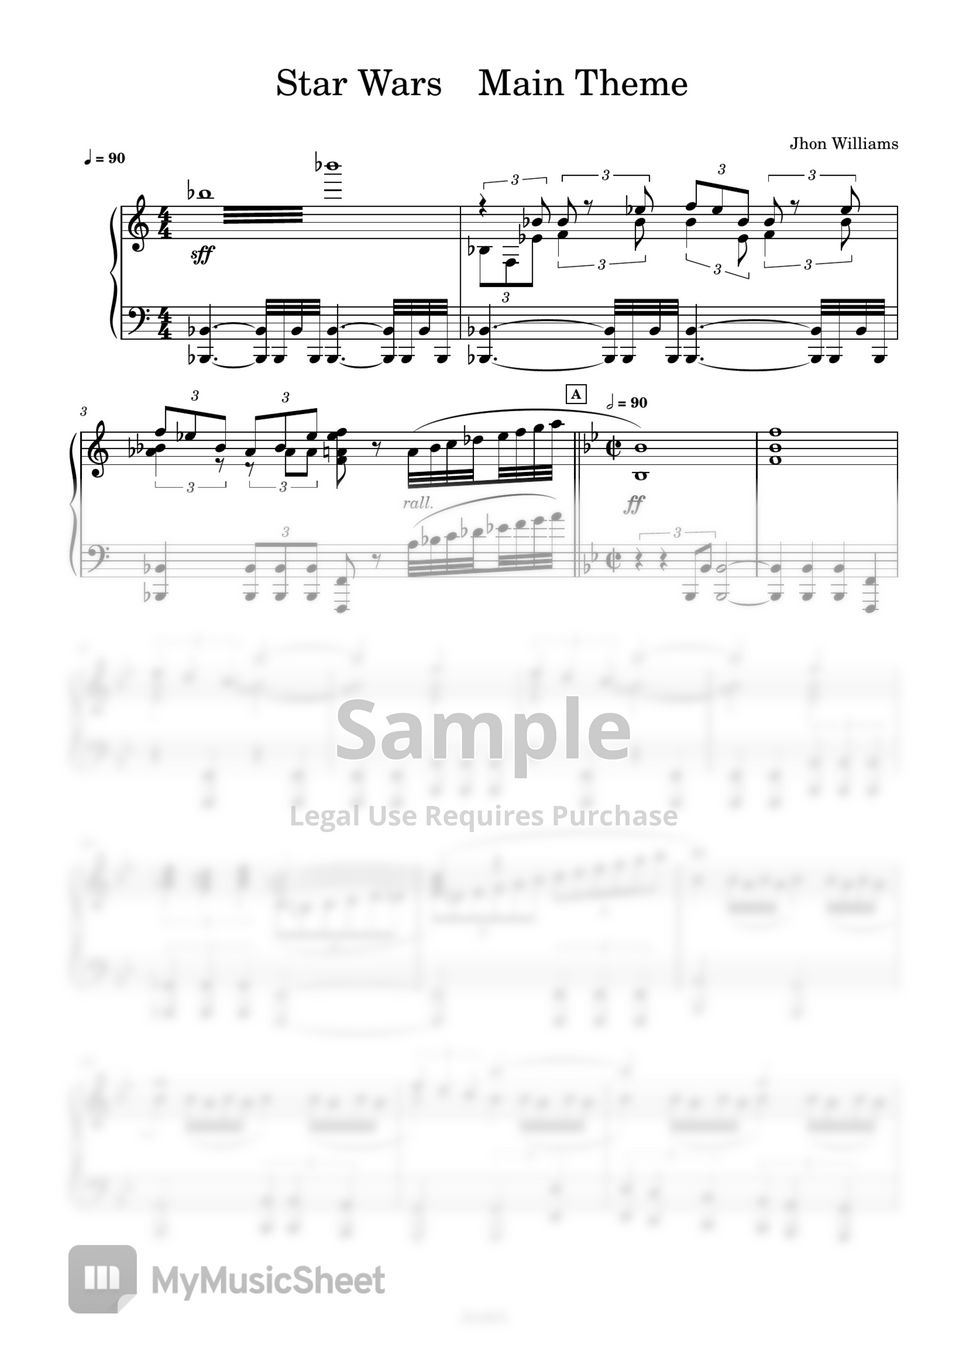 Jhon Williams - Star  Wars Main Theme (スターウォーズピアノ、star wars Piano) by AsukA